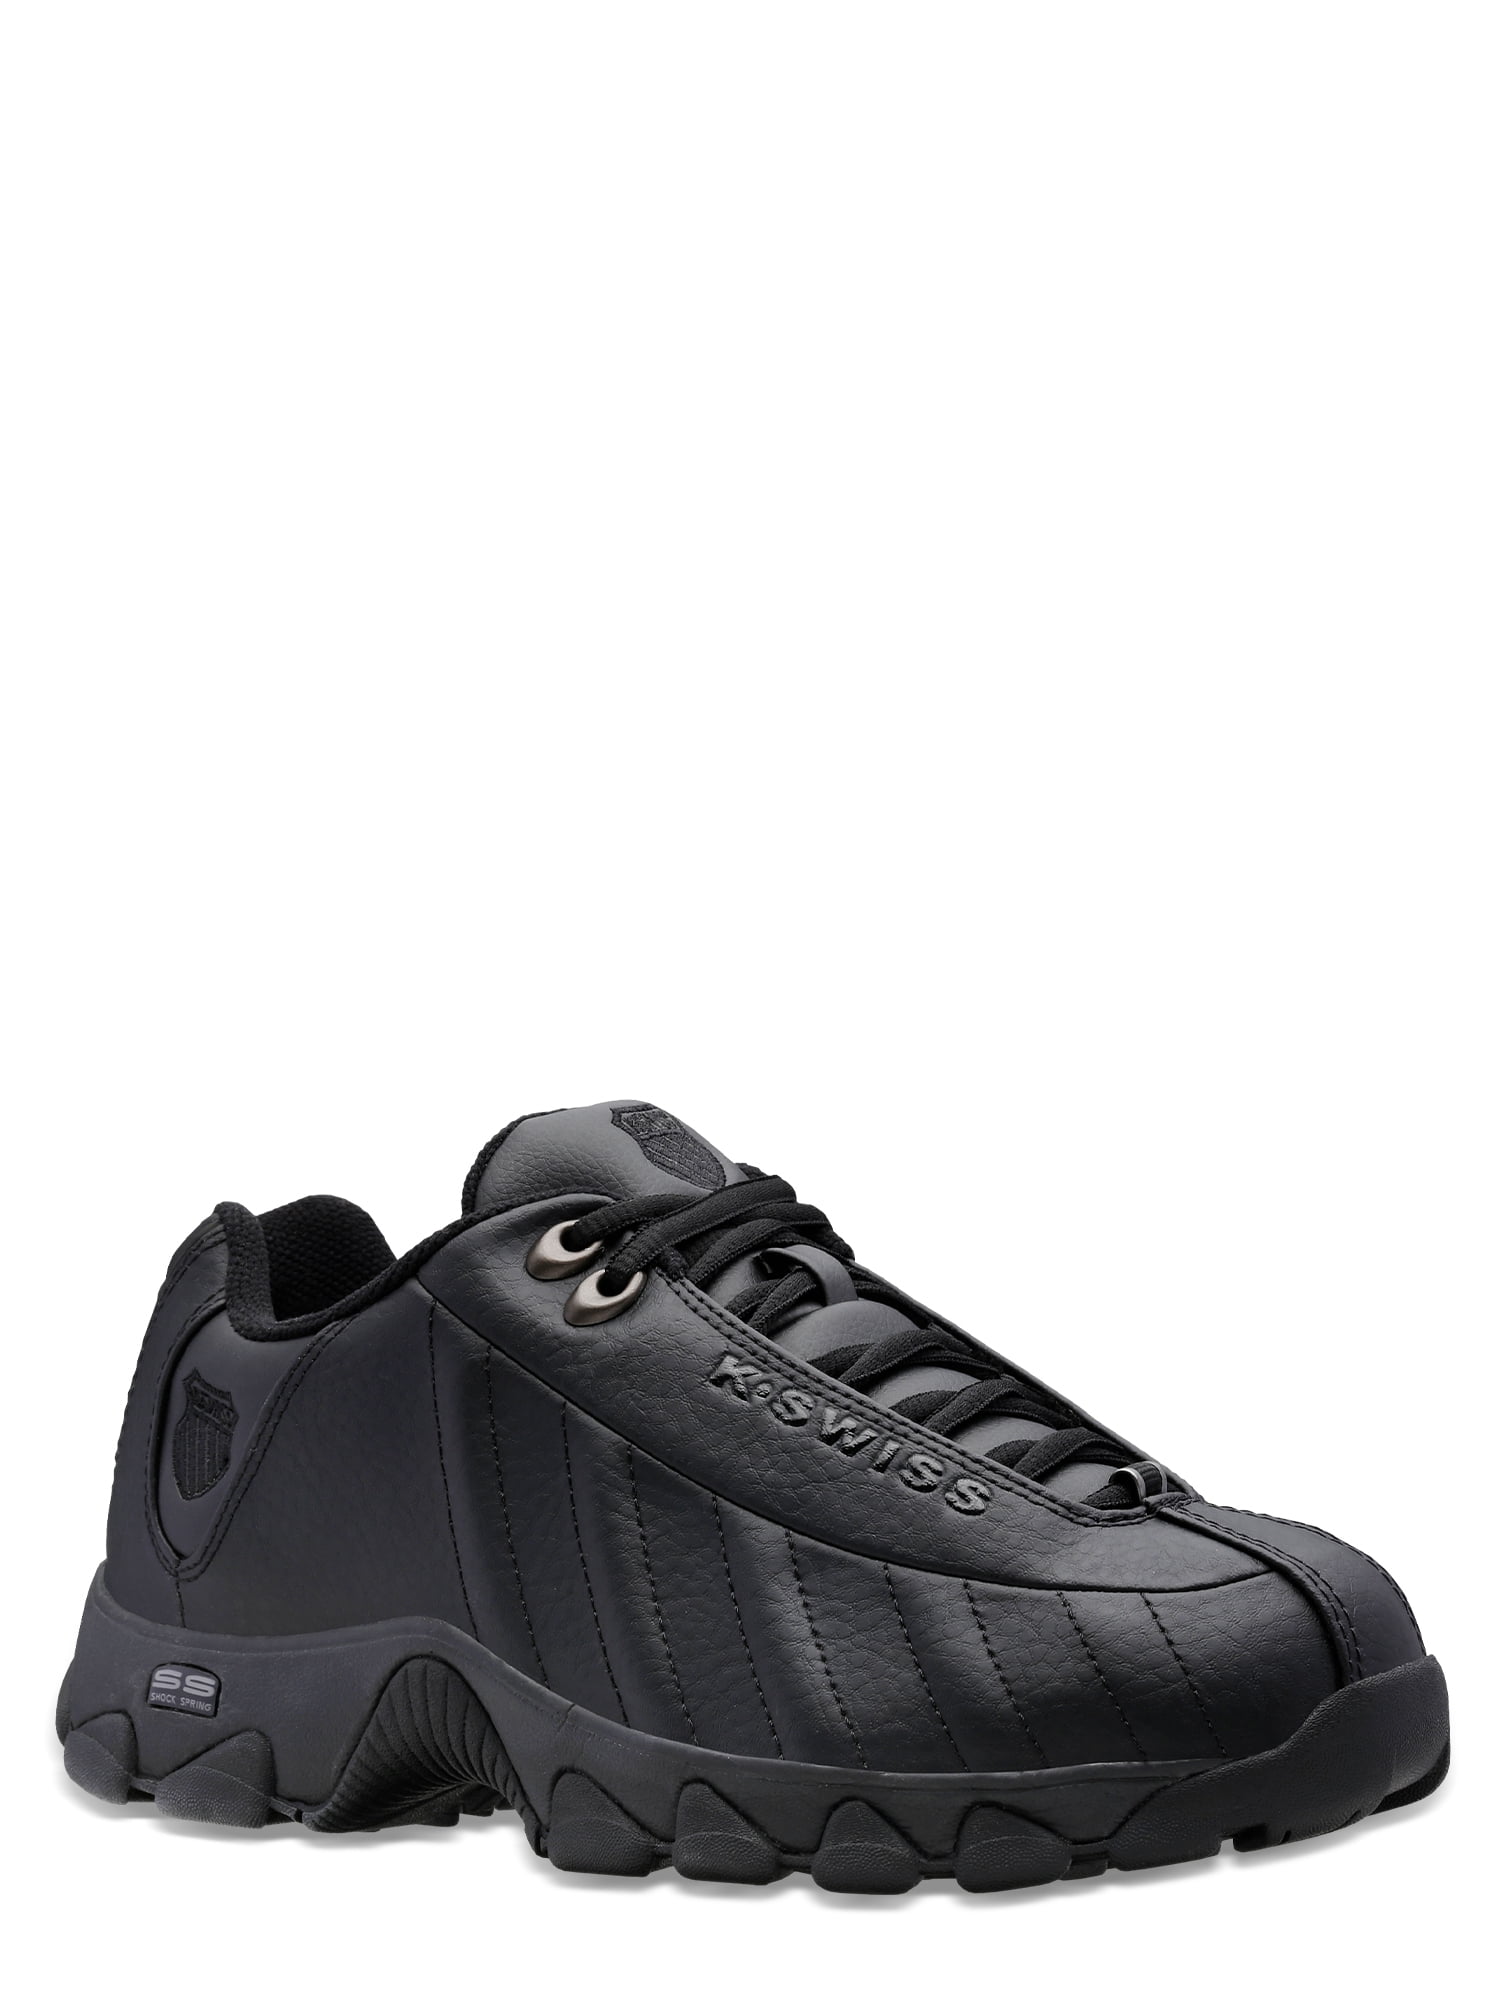 K-Swiss Men's ST329 CMF Sneaker Width Available) -